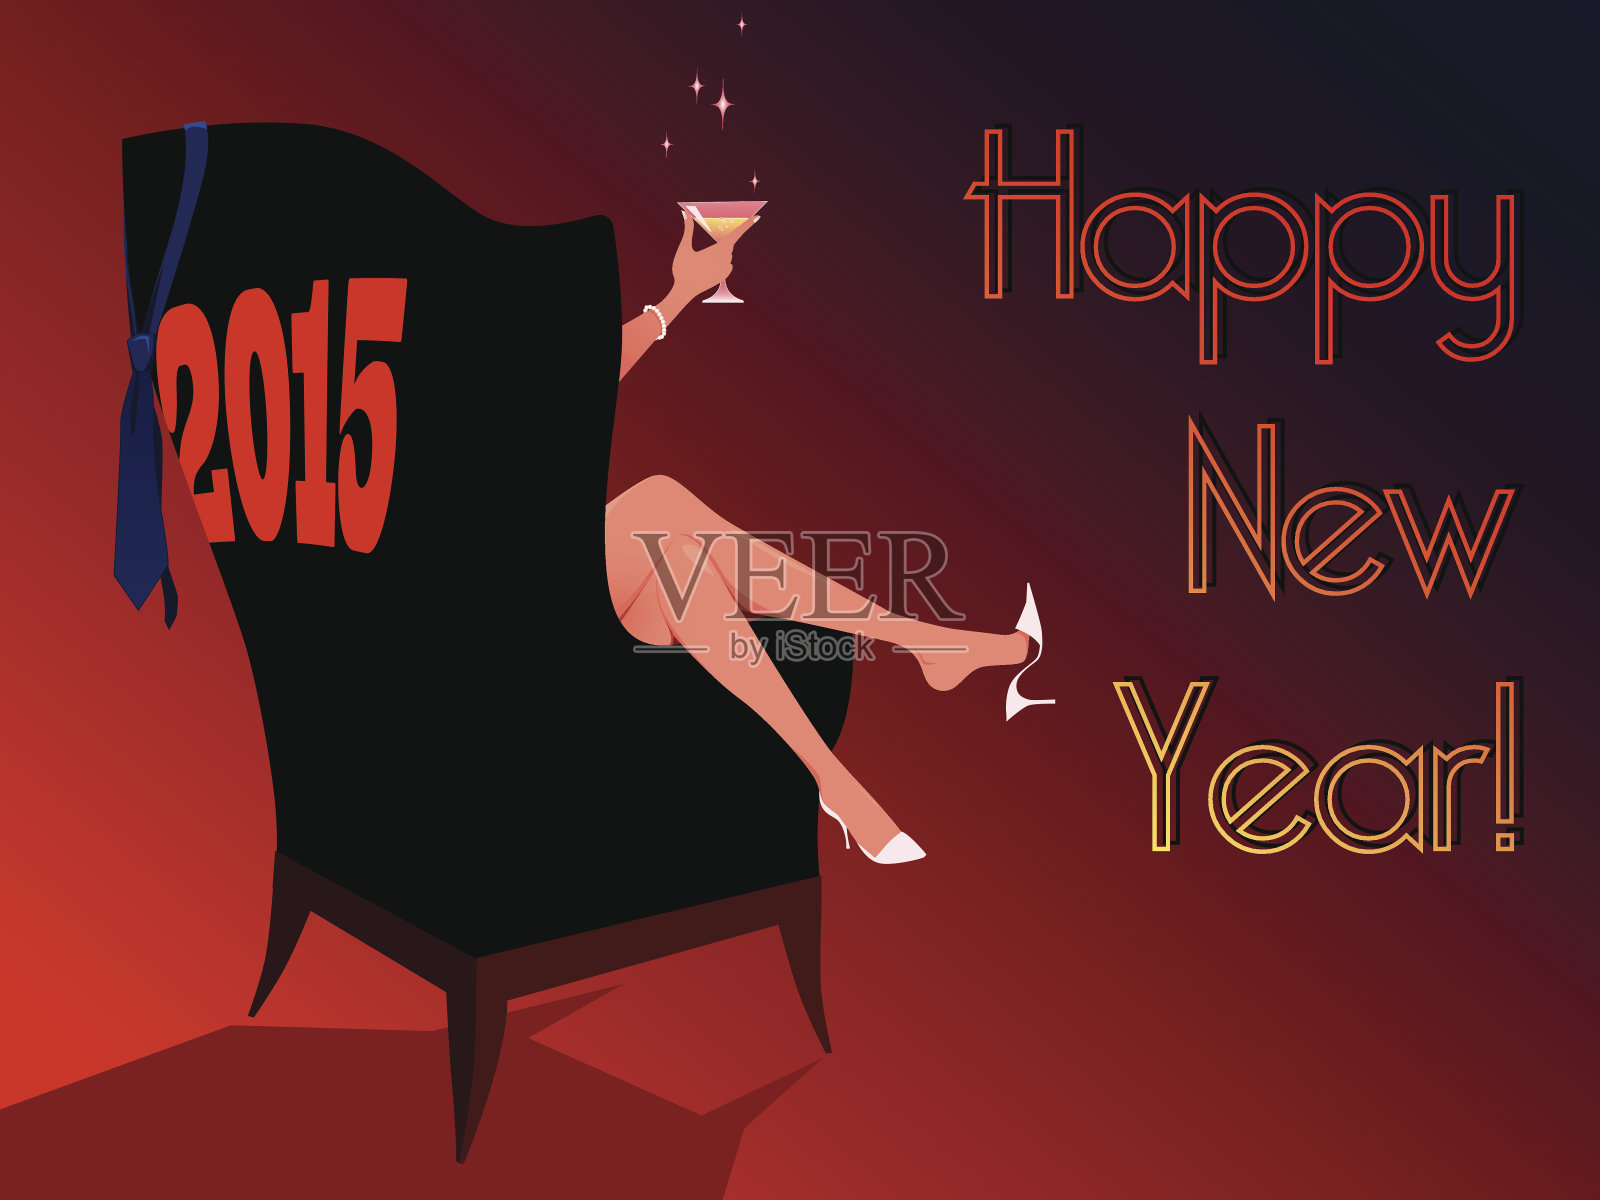 2015年新年快乐插画图片素材